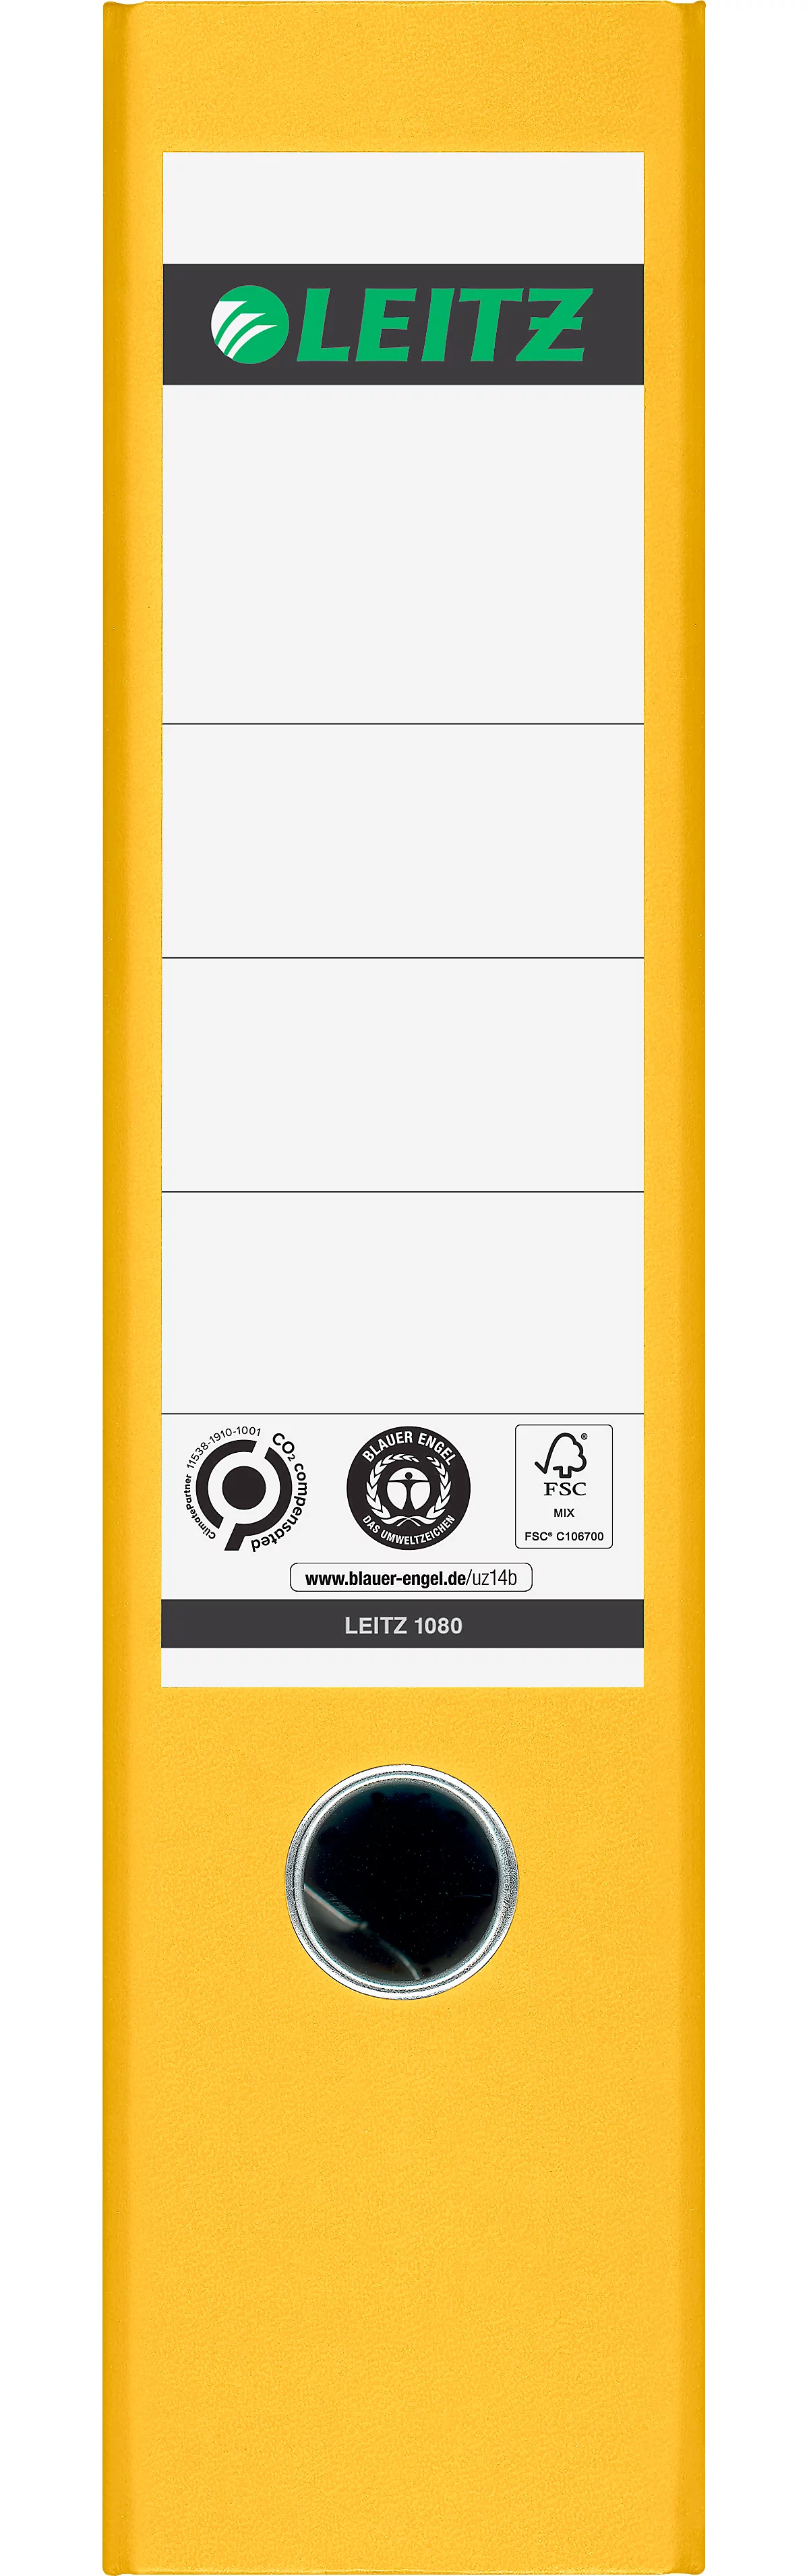 LEITZ® Ordner 1080, DIN A4, Rückenbreite 80 mm, Griffloch, geklebtes Rückenschild, klimaneutral, Hartpappe, 1 Stück, gelb